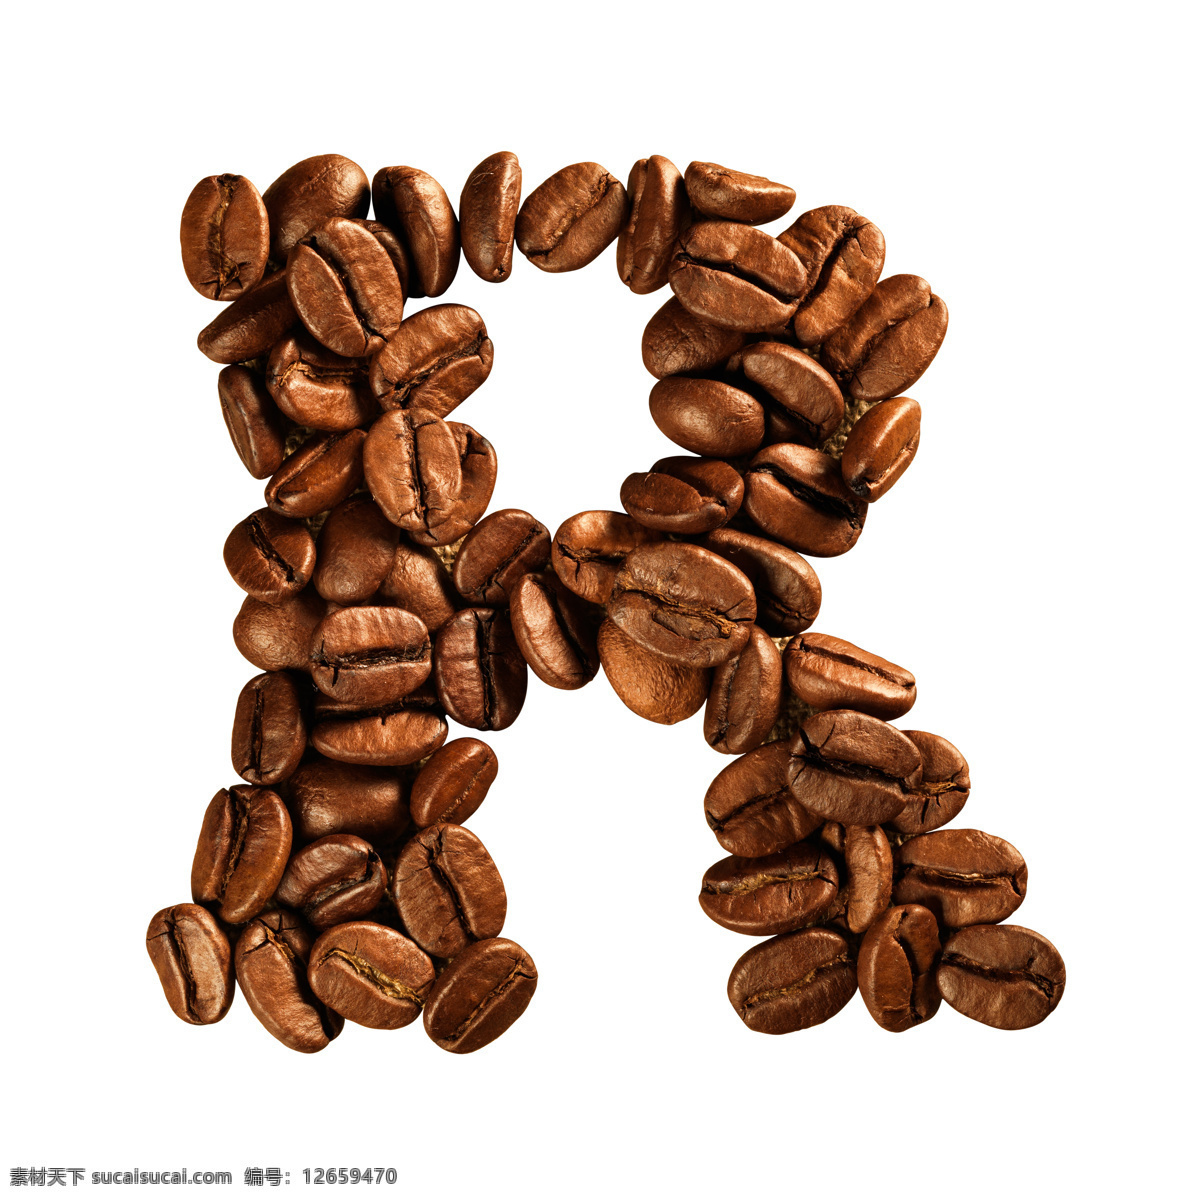 咖啡豆 组成 字母 r 咖啡 文字 艺术字体 食材原料 书画文字 文化艺术 白色